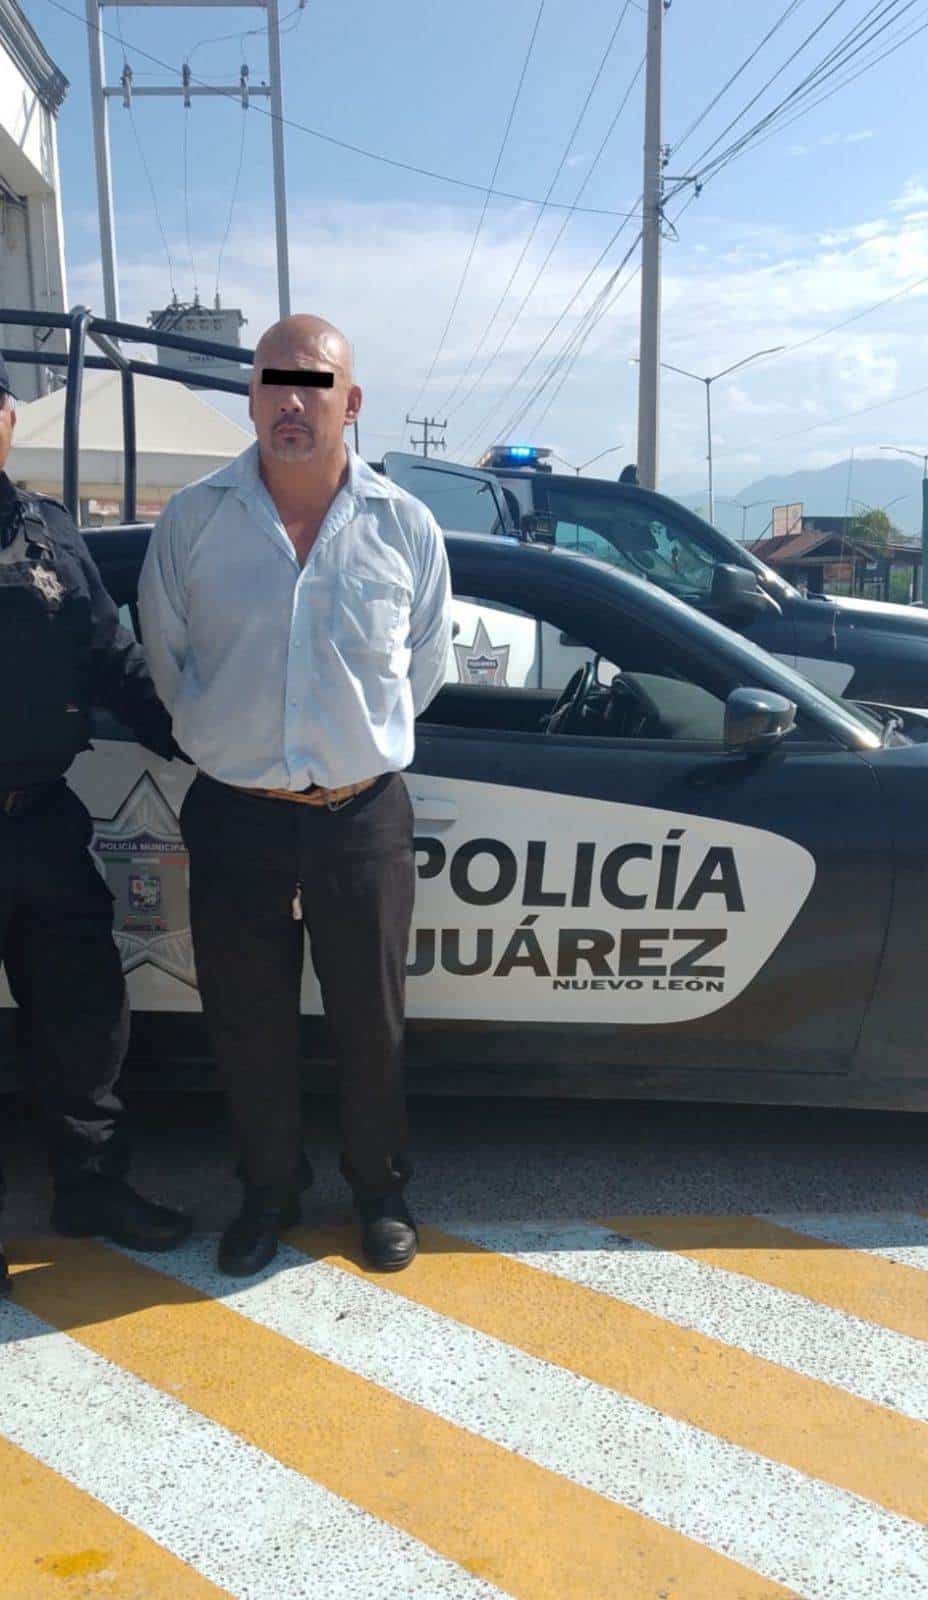 Elementos de la Policía de Juárez arrestaron a una persona por el delito de amenazas en la Colonia Valle Santa Isabel, presuntamente exigía dinero a un operador de un transporte urbano y lo amagó con un arma blanca.